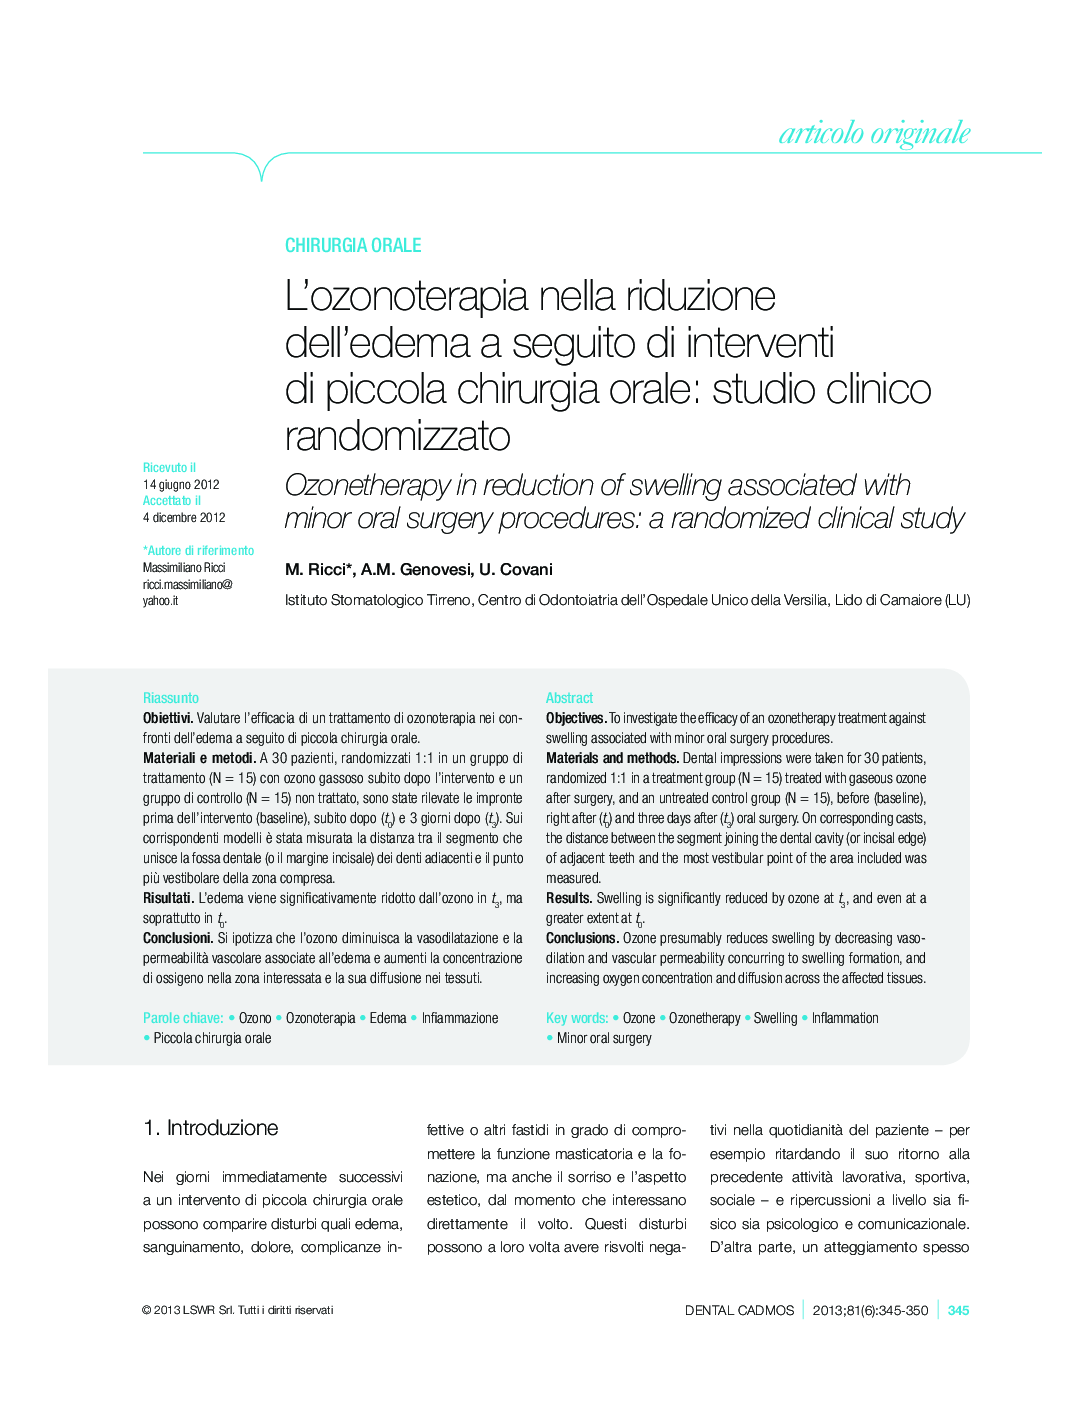 L'ozonoterapia nella riduzione dell'edema a seguito di interventi di piccola chirurgia orale: studio clinico randomizzato